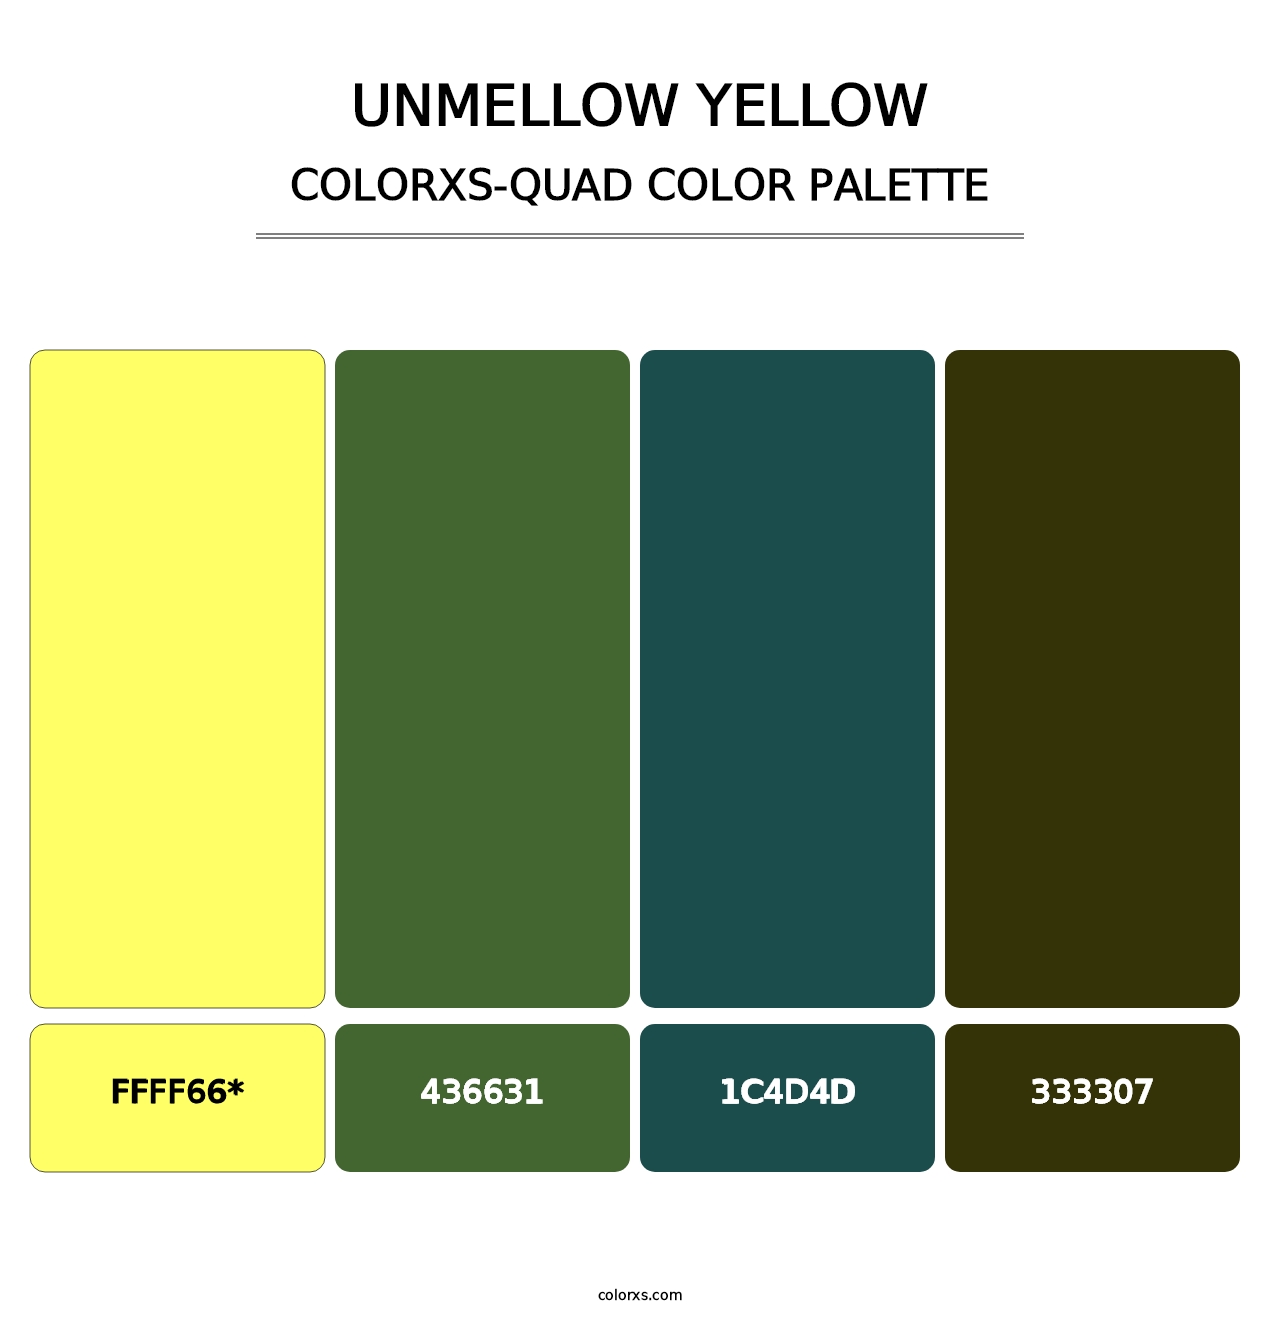 Unmellow Yellow - Colorxs Quad Palette